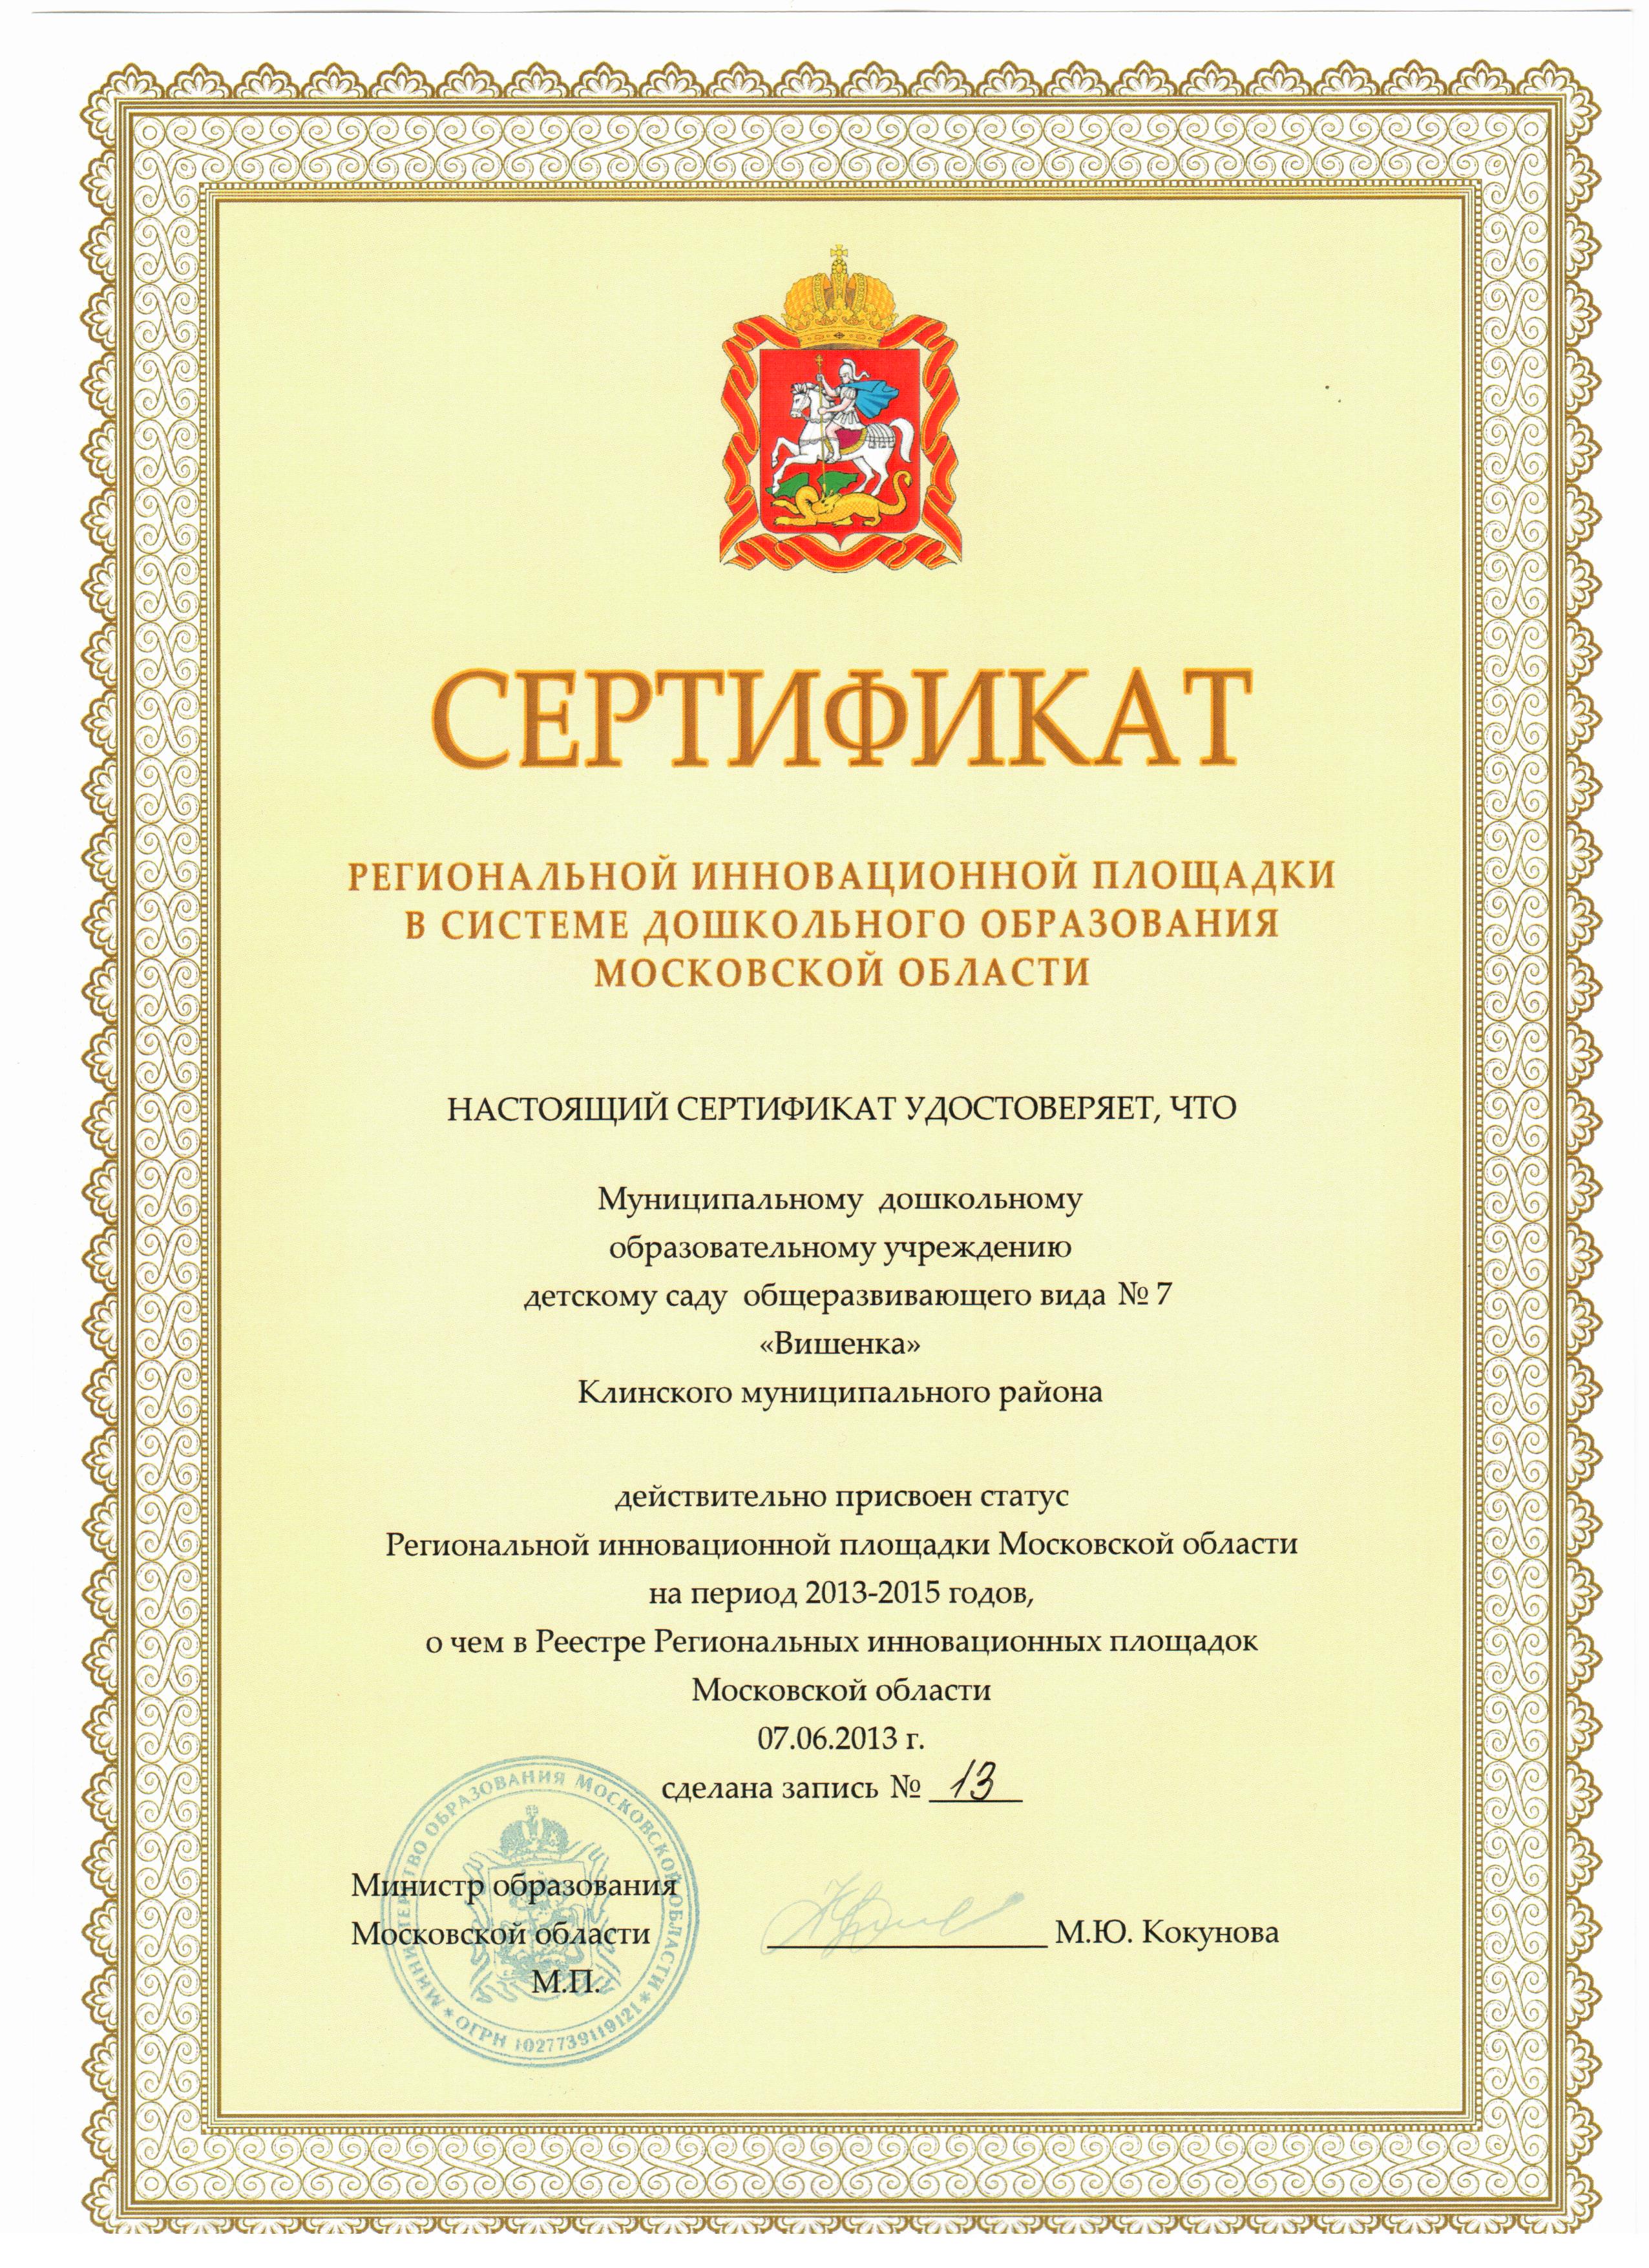 Сертификат региональной инновационной площадки